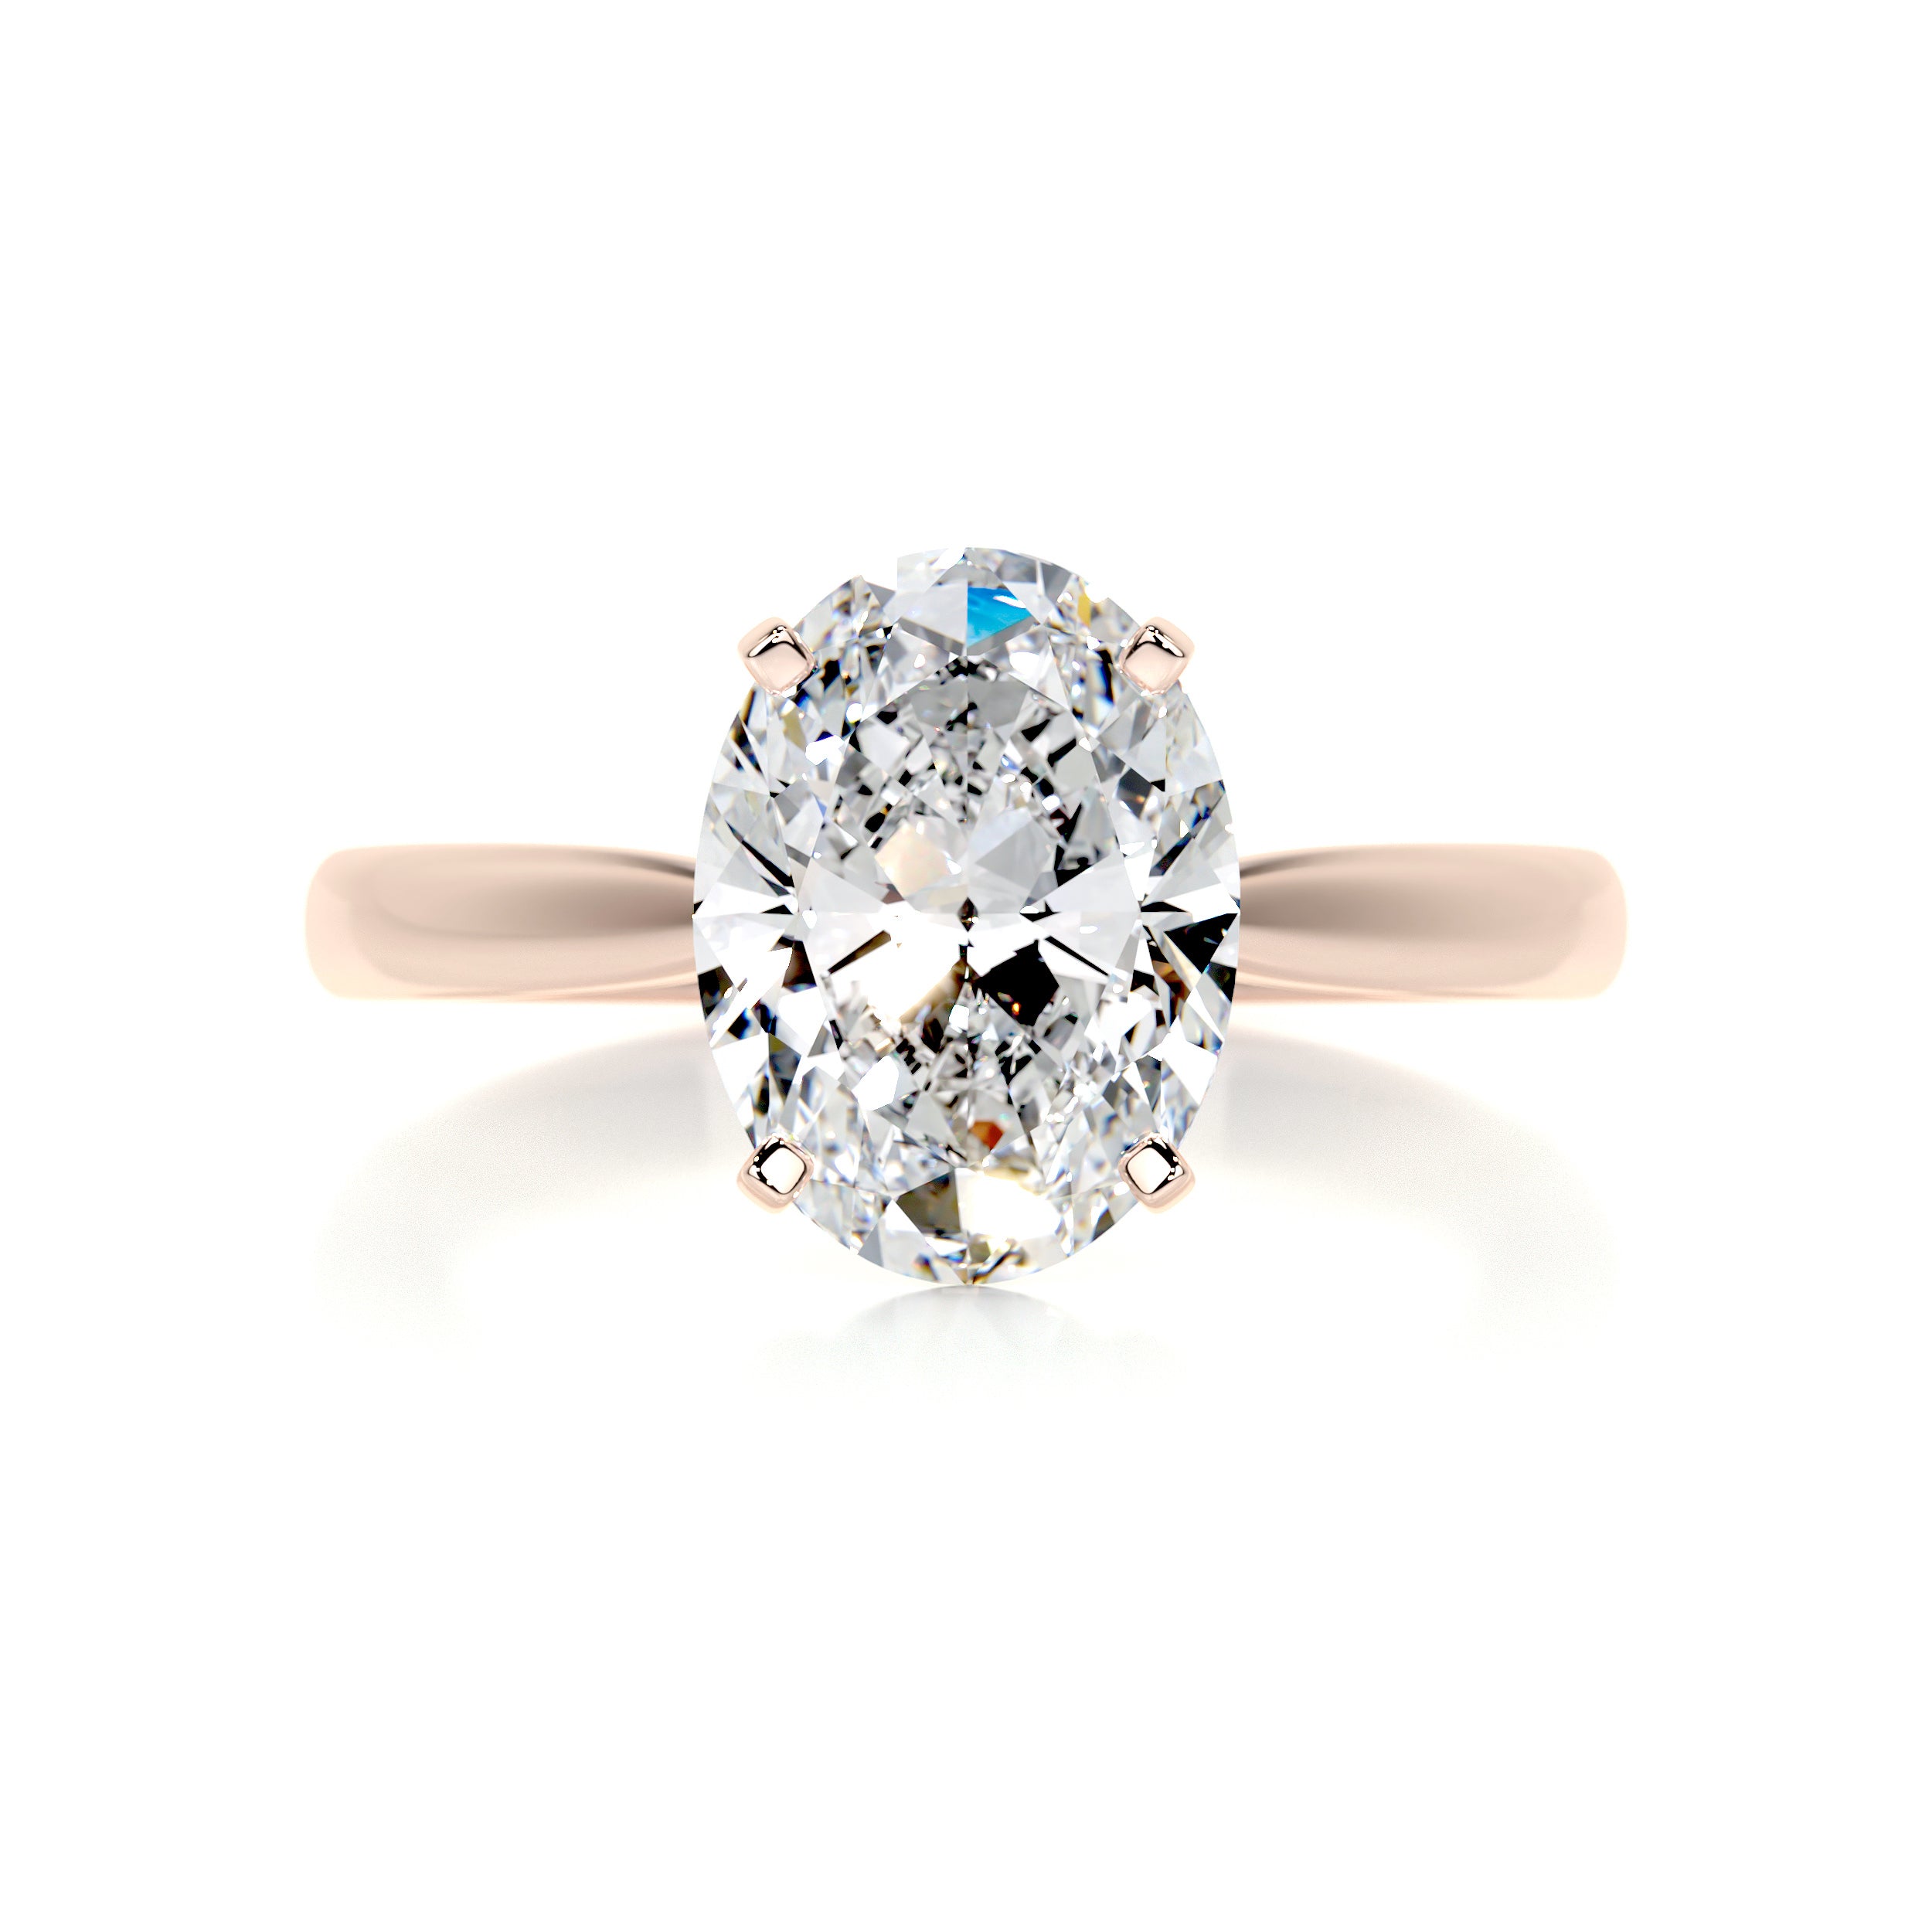 Diana Diamond Engagement Ring   (2 Carat) -14K Rose Gold